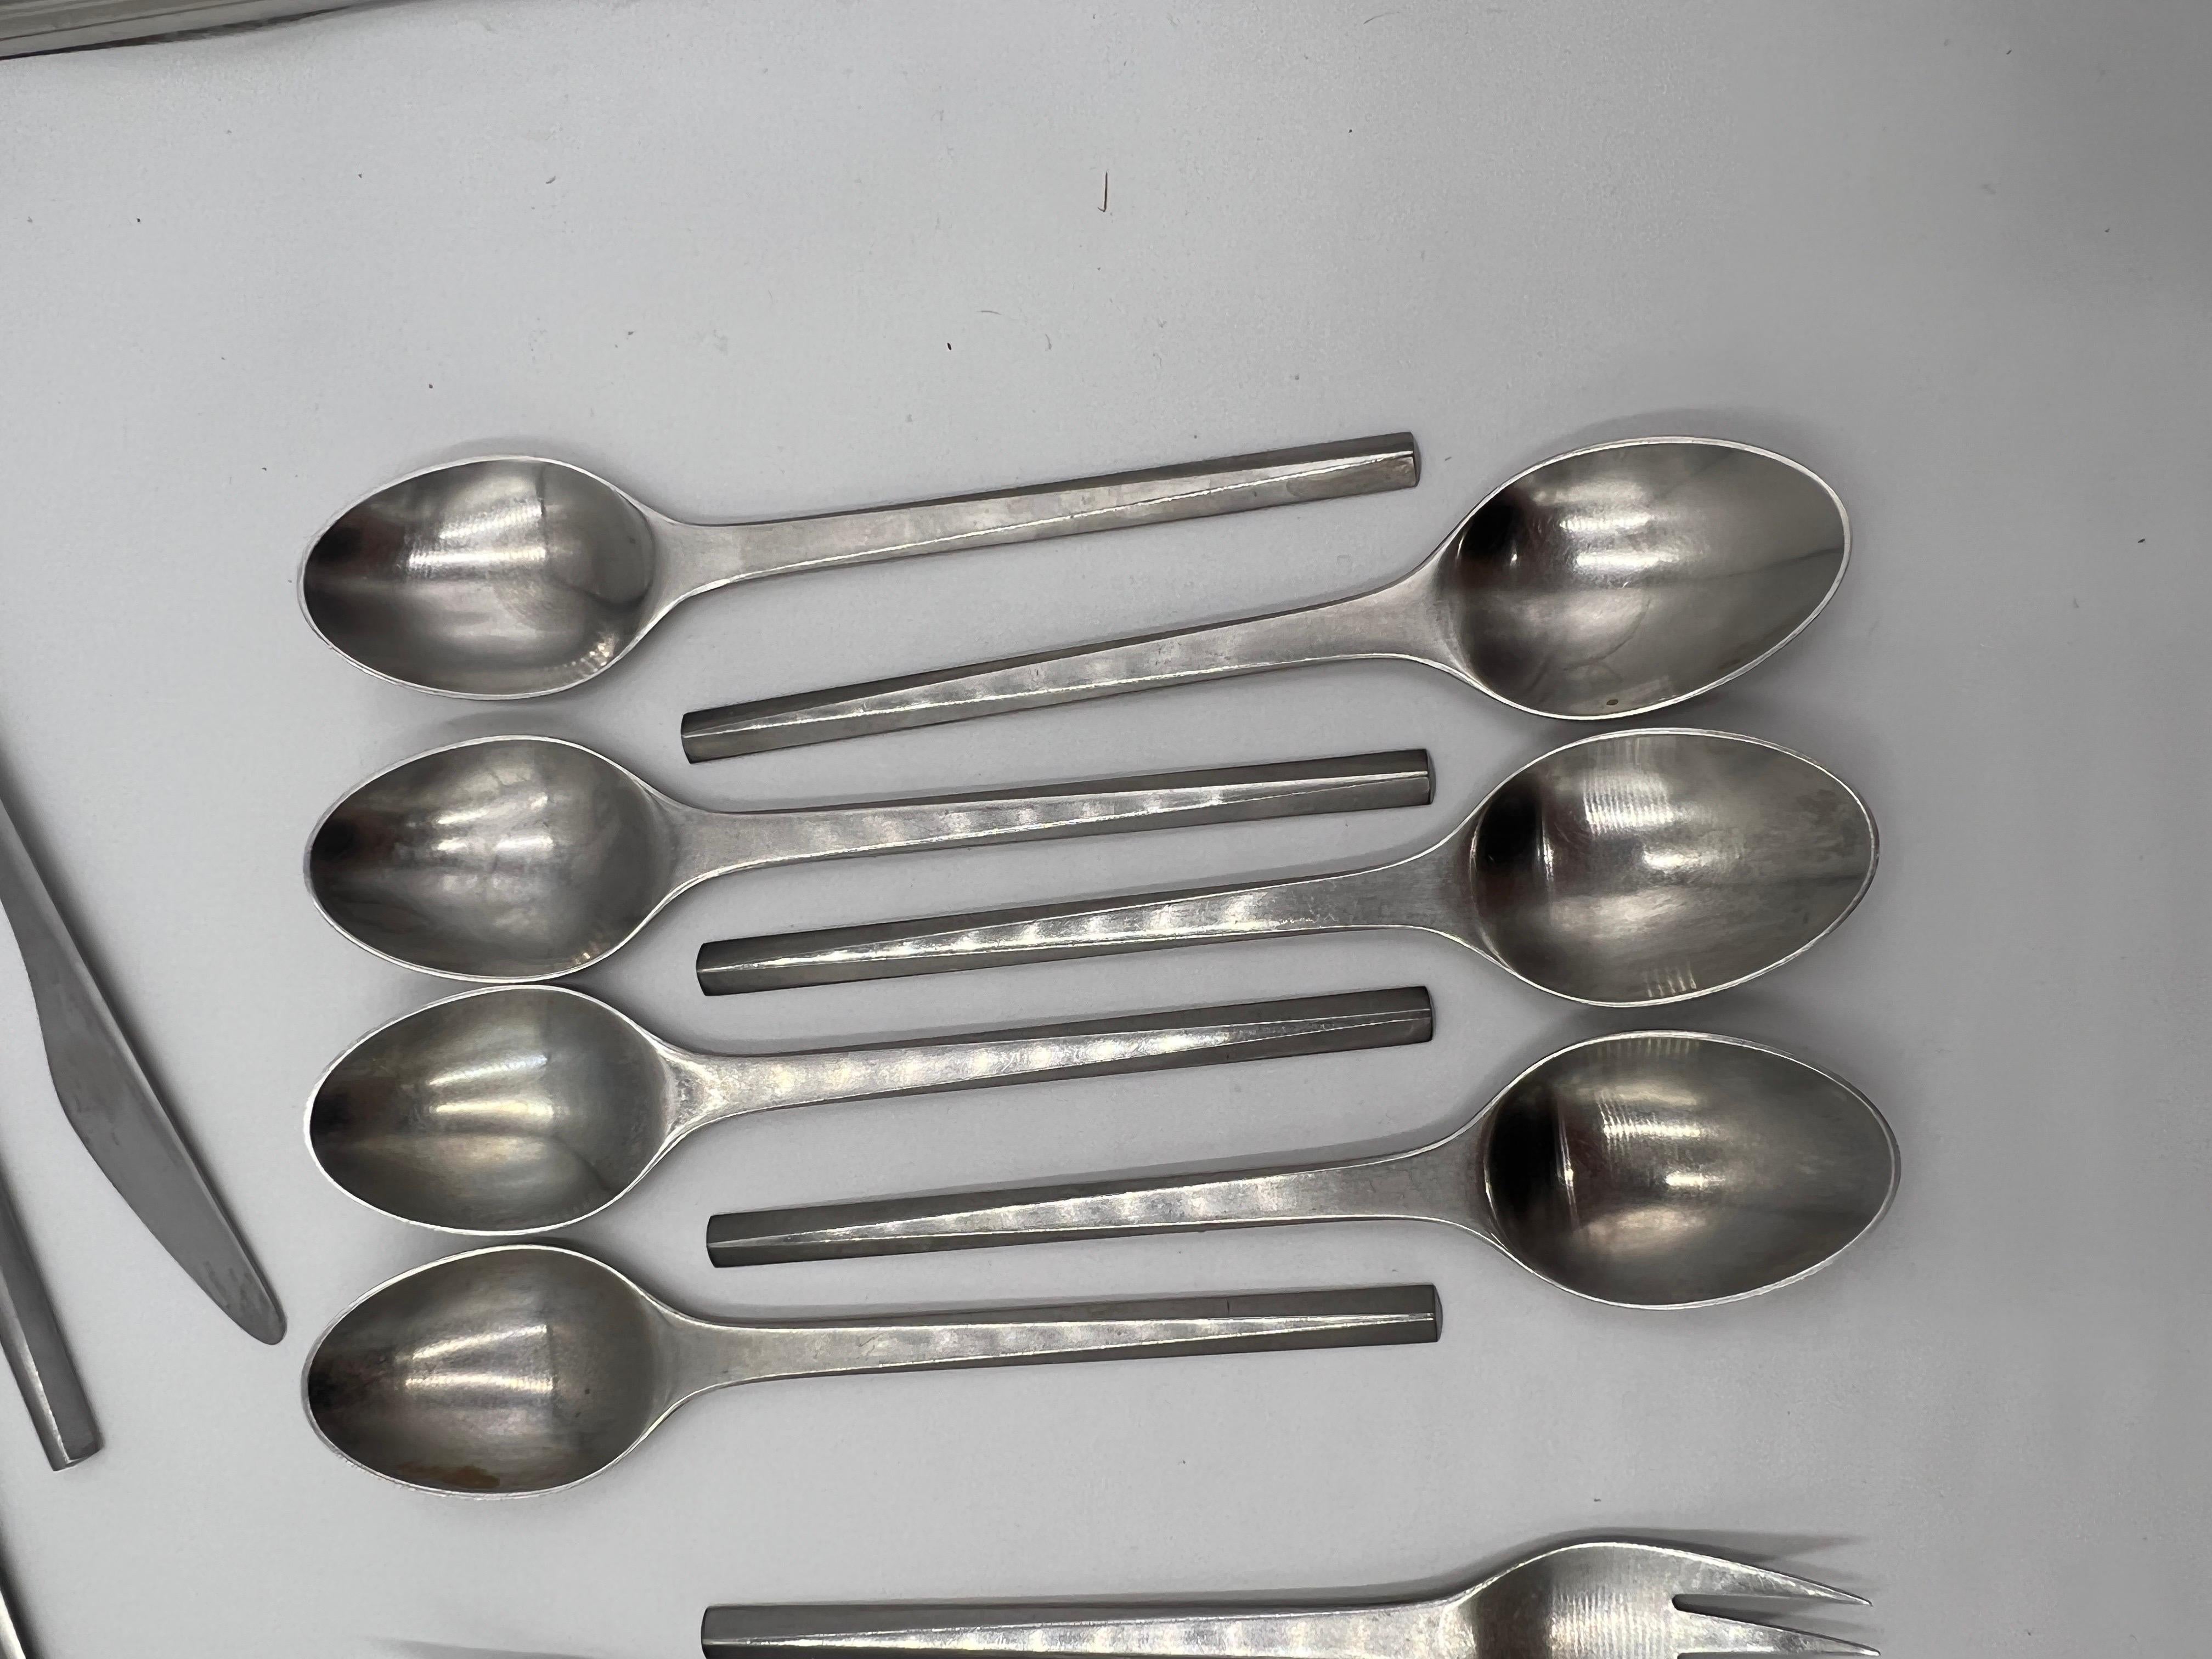 39 Pc, Georg Jesen “Prism” stainless steel flatware set.


Set includes:

1 - 6” Shrimp fork

7 - 7” spoons

6 - 7” forks

4 - 6.5” knives

7 - 7.75” forks

4 - 6.25” spoons

4 - 7.5” spoons

6 - 8.25” knives


Note: these have